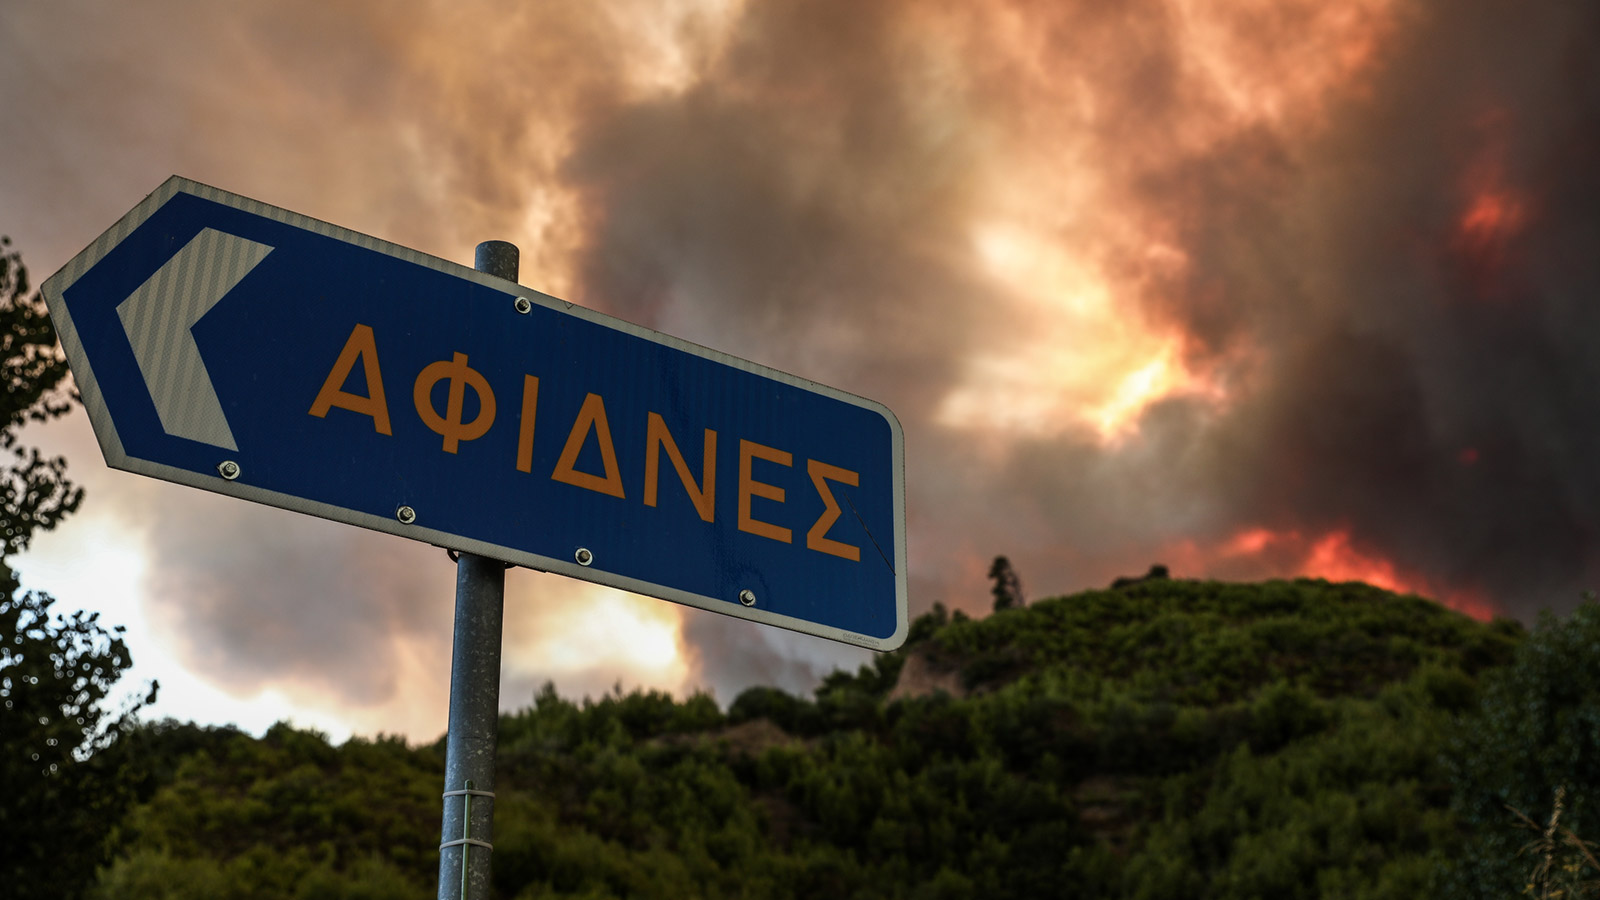 तुर्की और ग्रीस में फैली विनाशकारी जंगल की आग